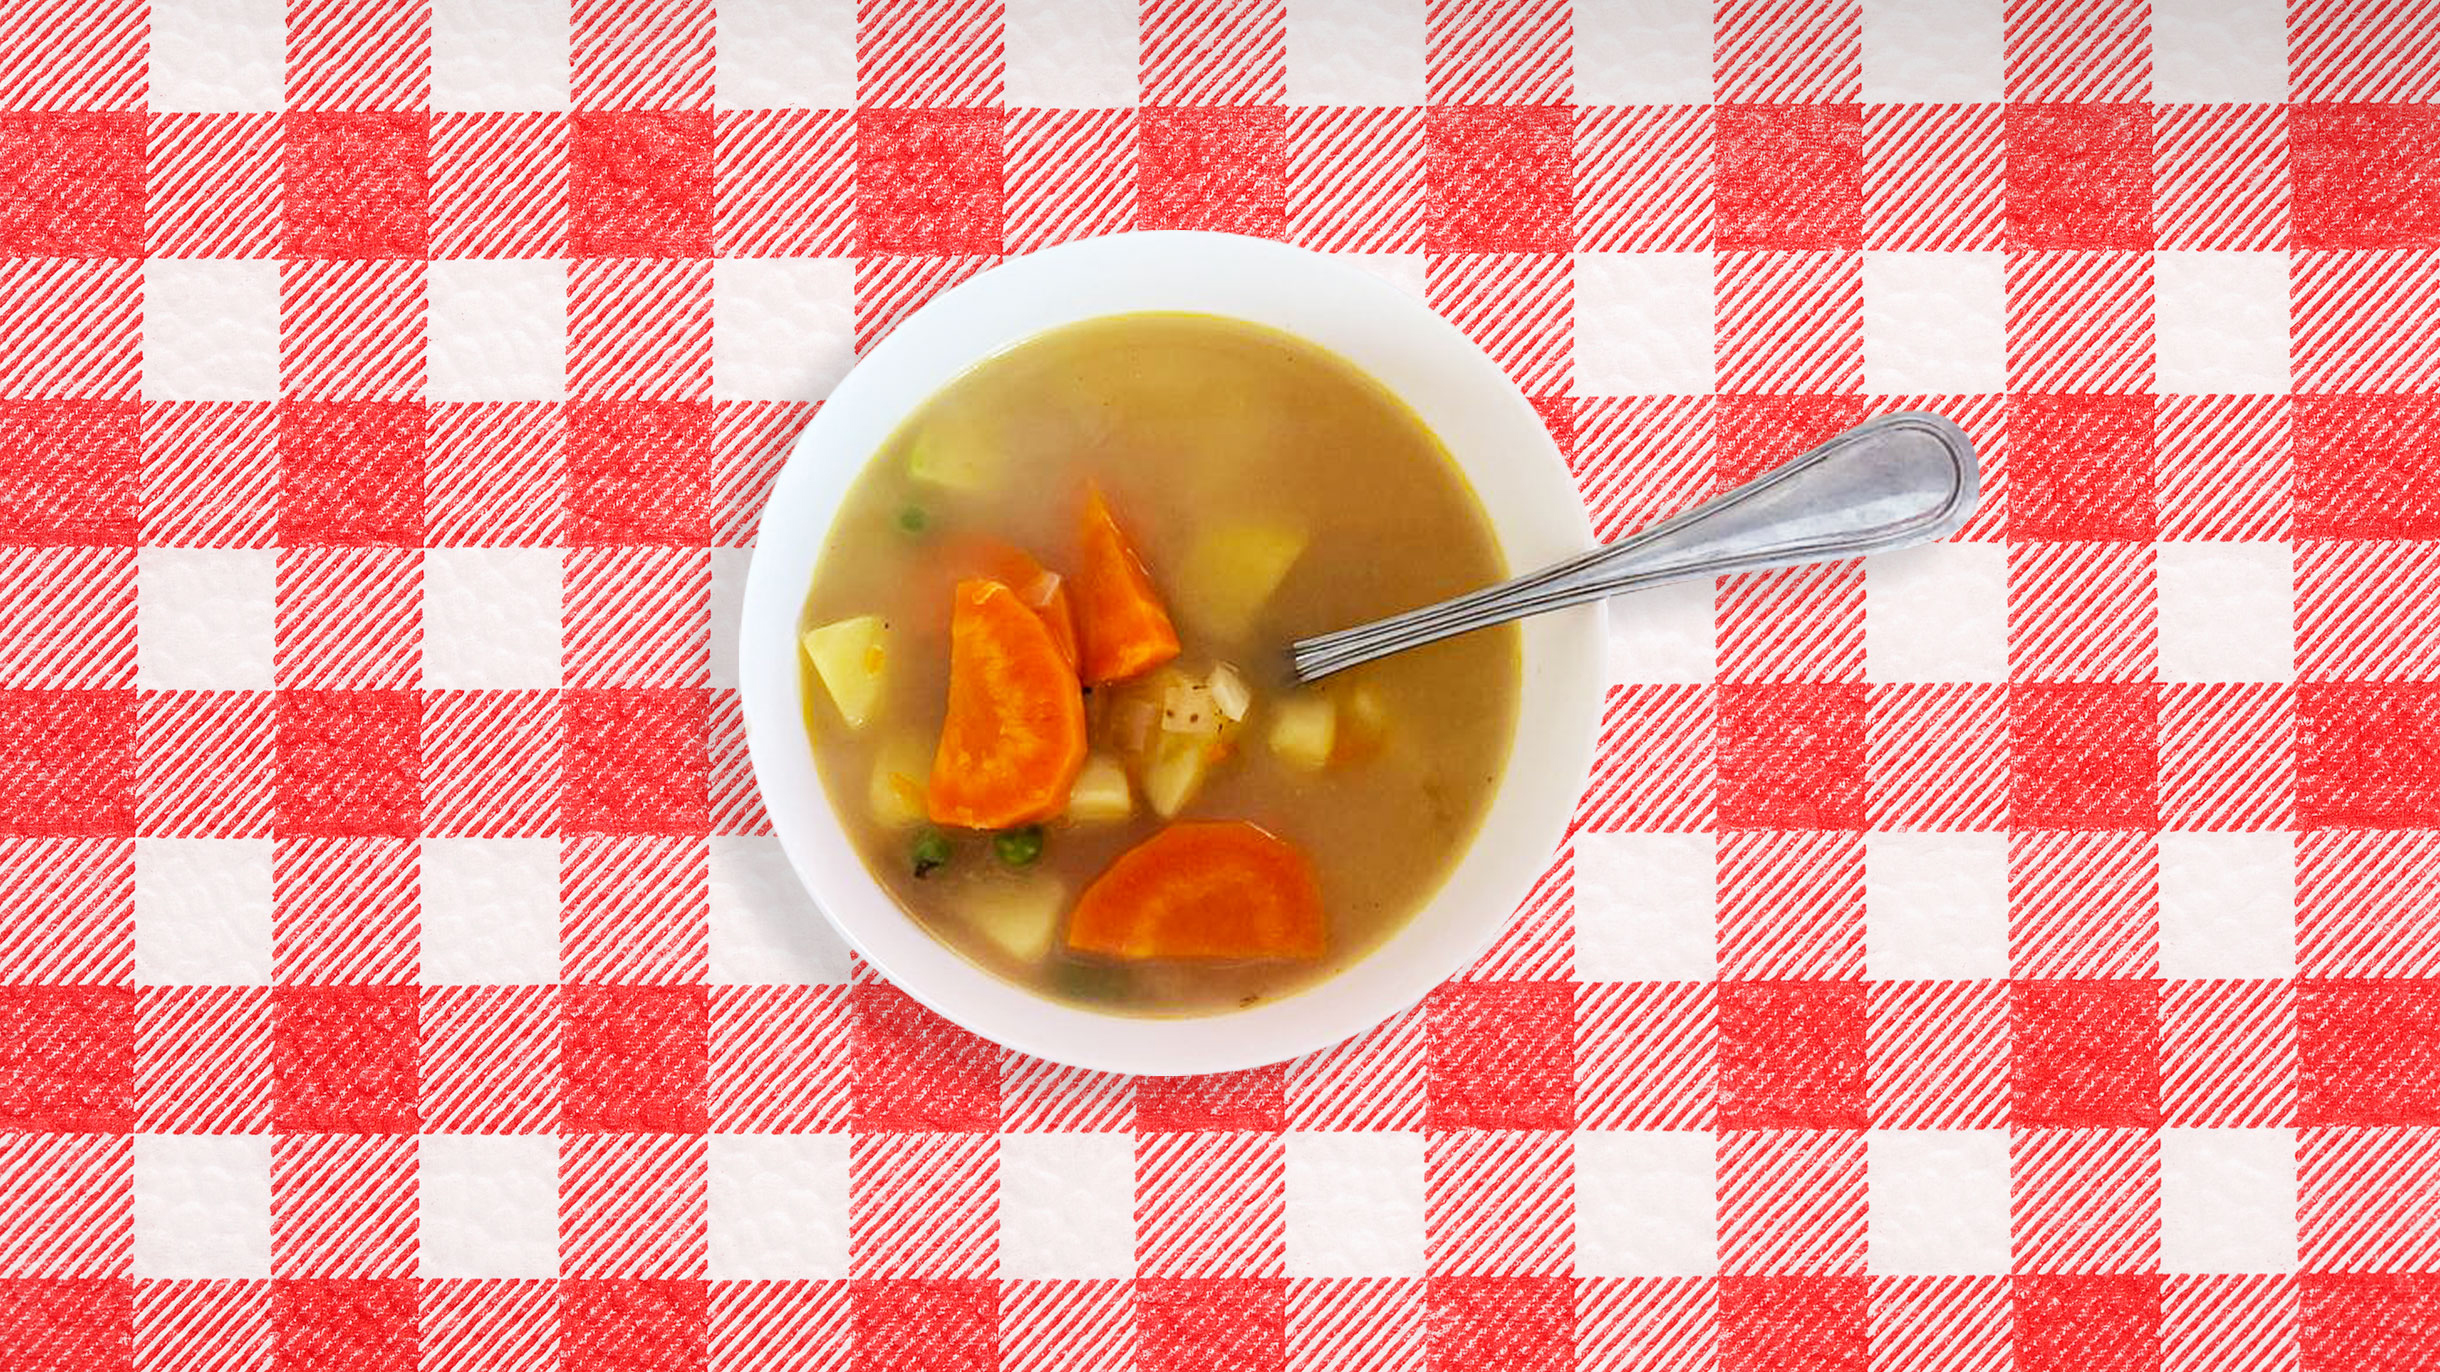 Самая важная деталь во время приготовления супа: как правильно нарезать картофель